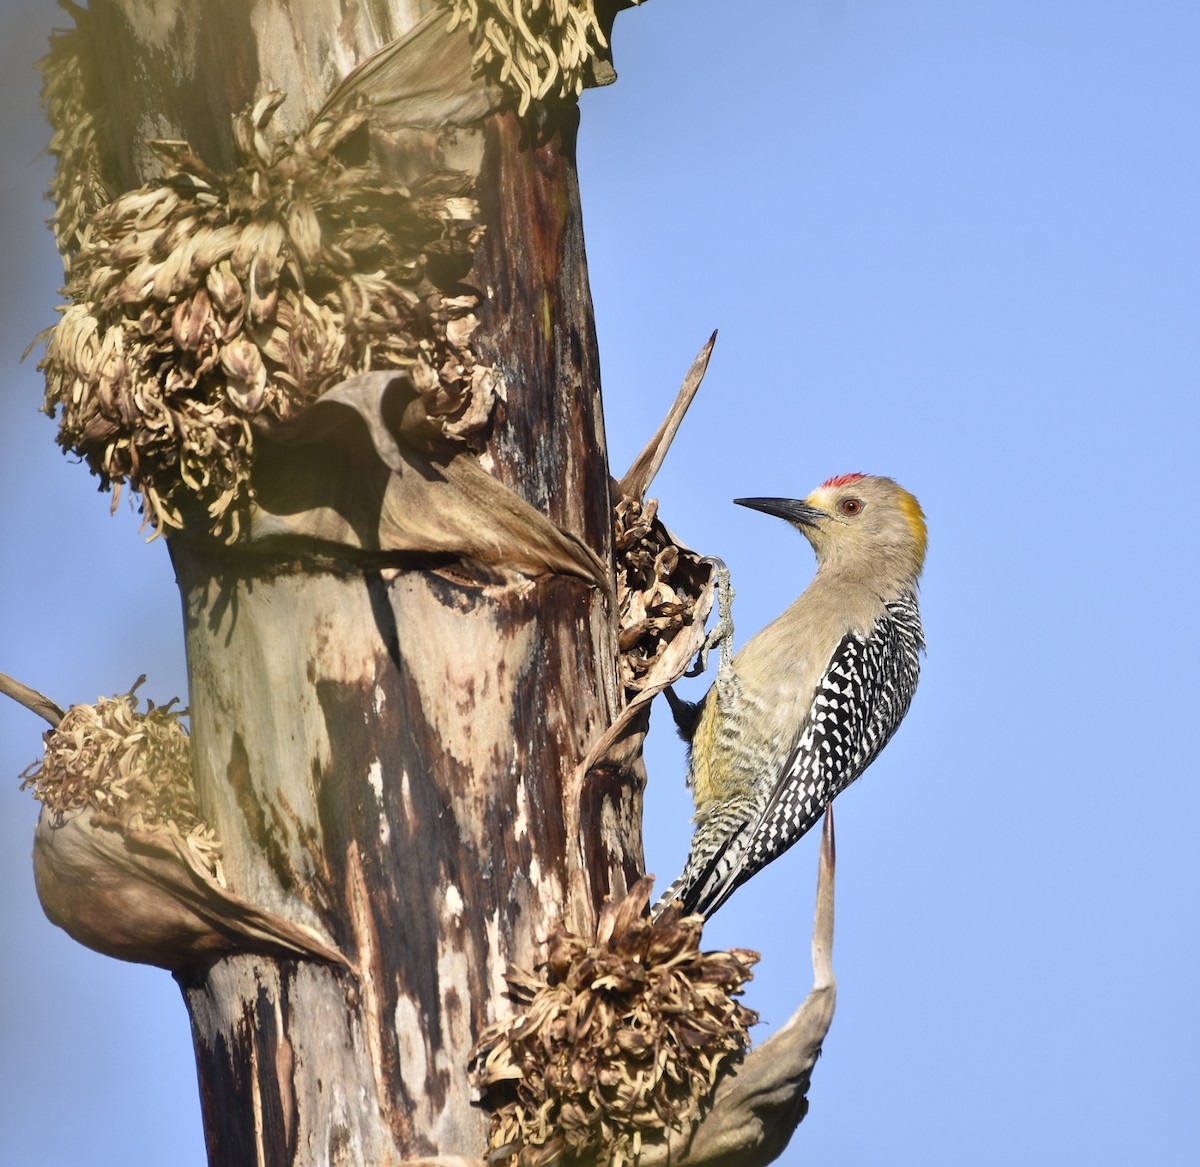 Golden-fronted Woodpecker (Northern) - Esteban Matías (birding guide) Sierra de los Cuchumatanes Huehuetenango esteban.matias@hotmail.com                             +502 53810540